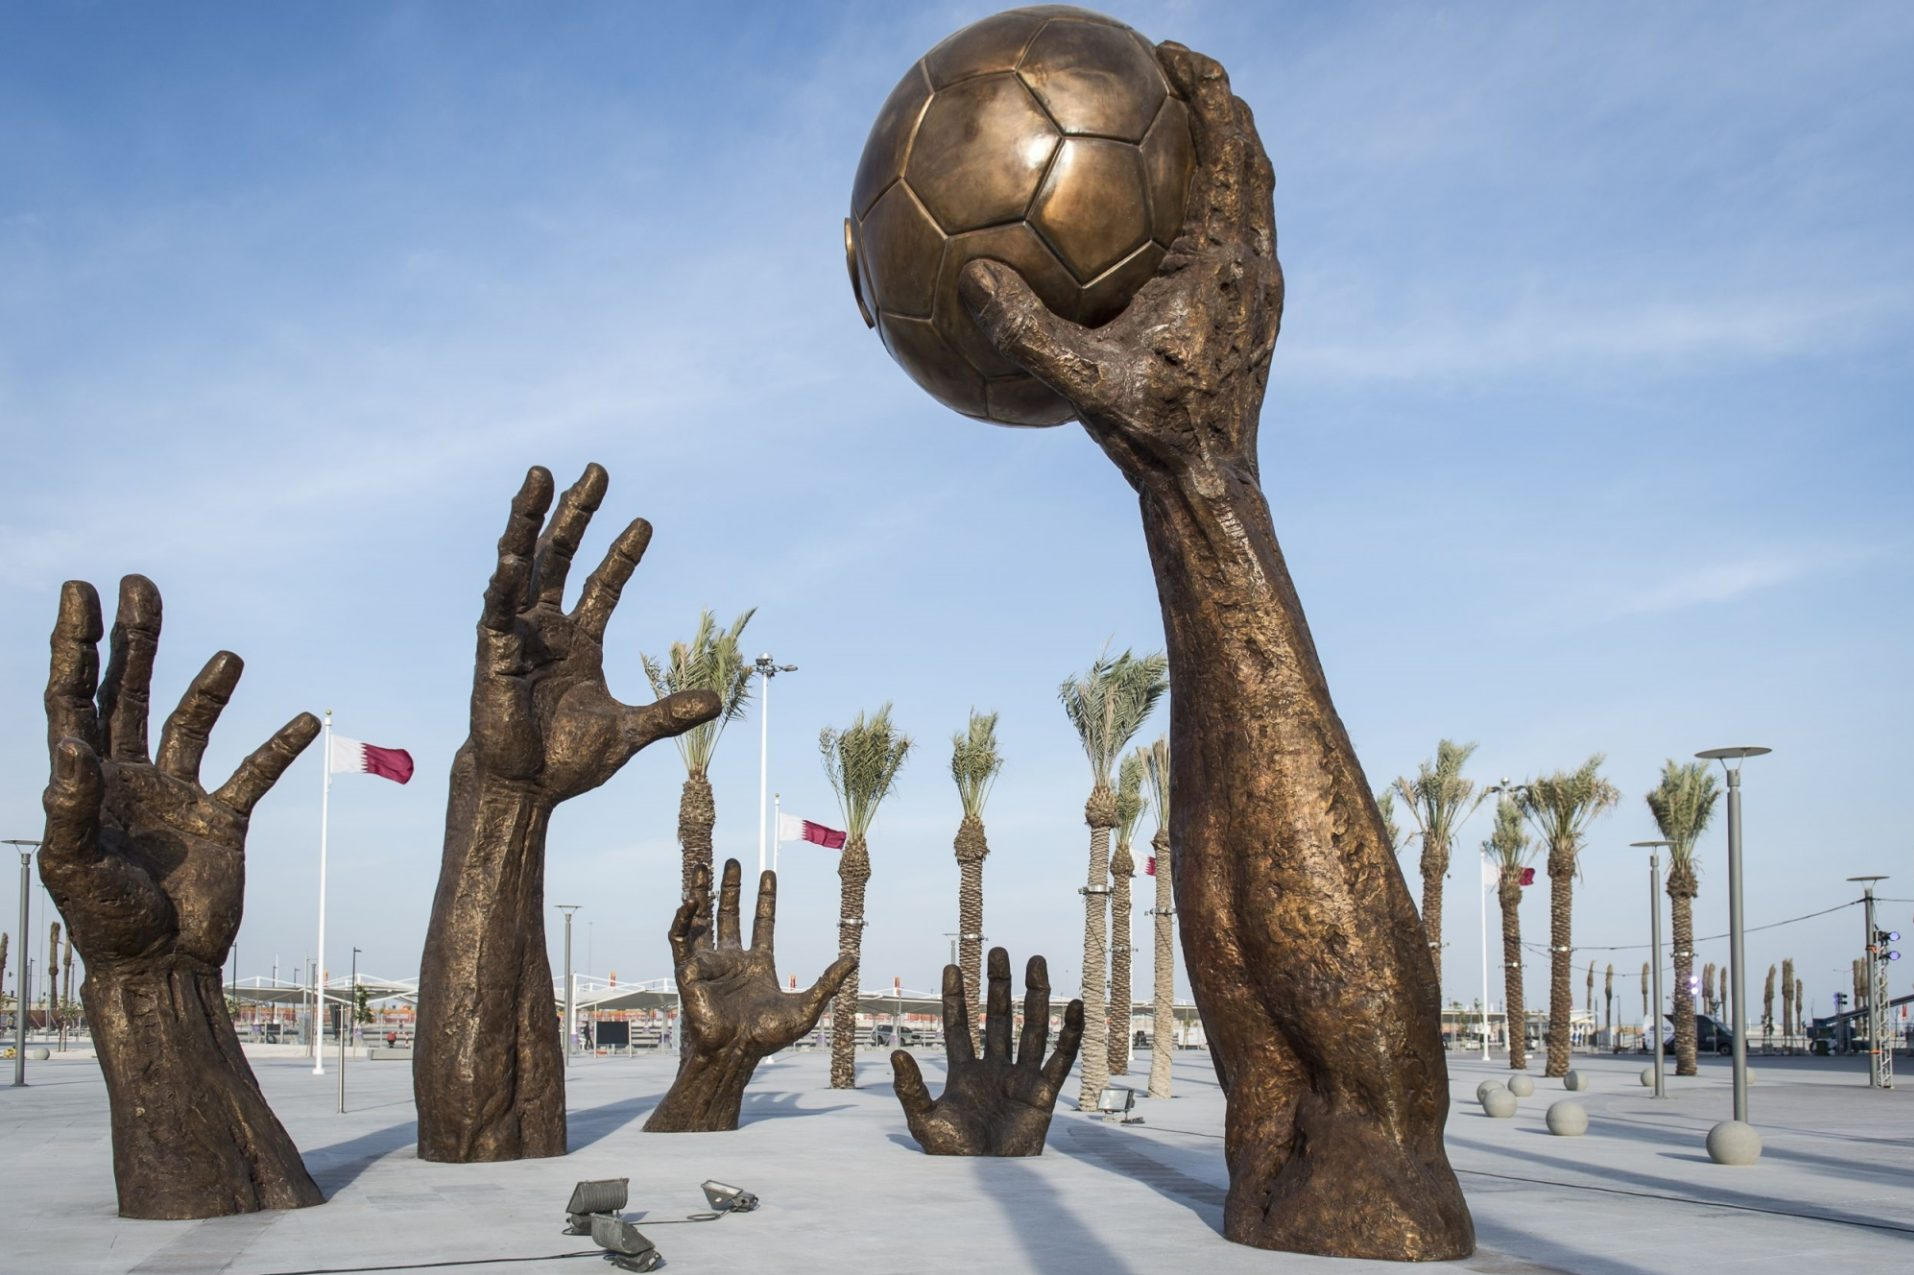 40 milžiniškų statulų pastatymas Katare / Pasaulio futbolo čempionate ir dviguba atrakcija